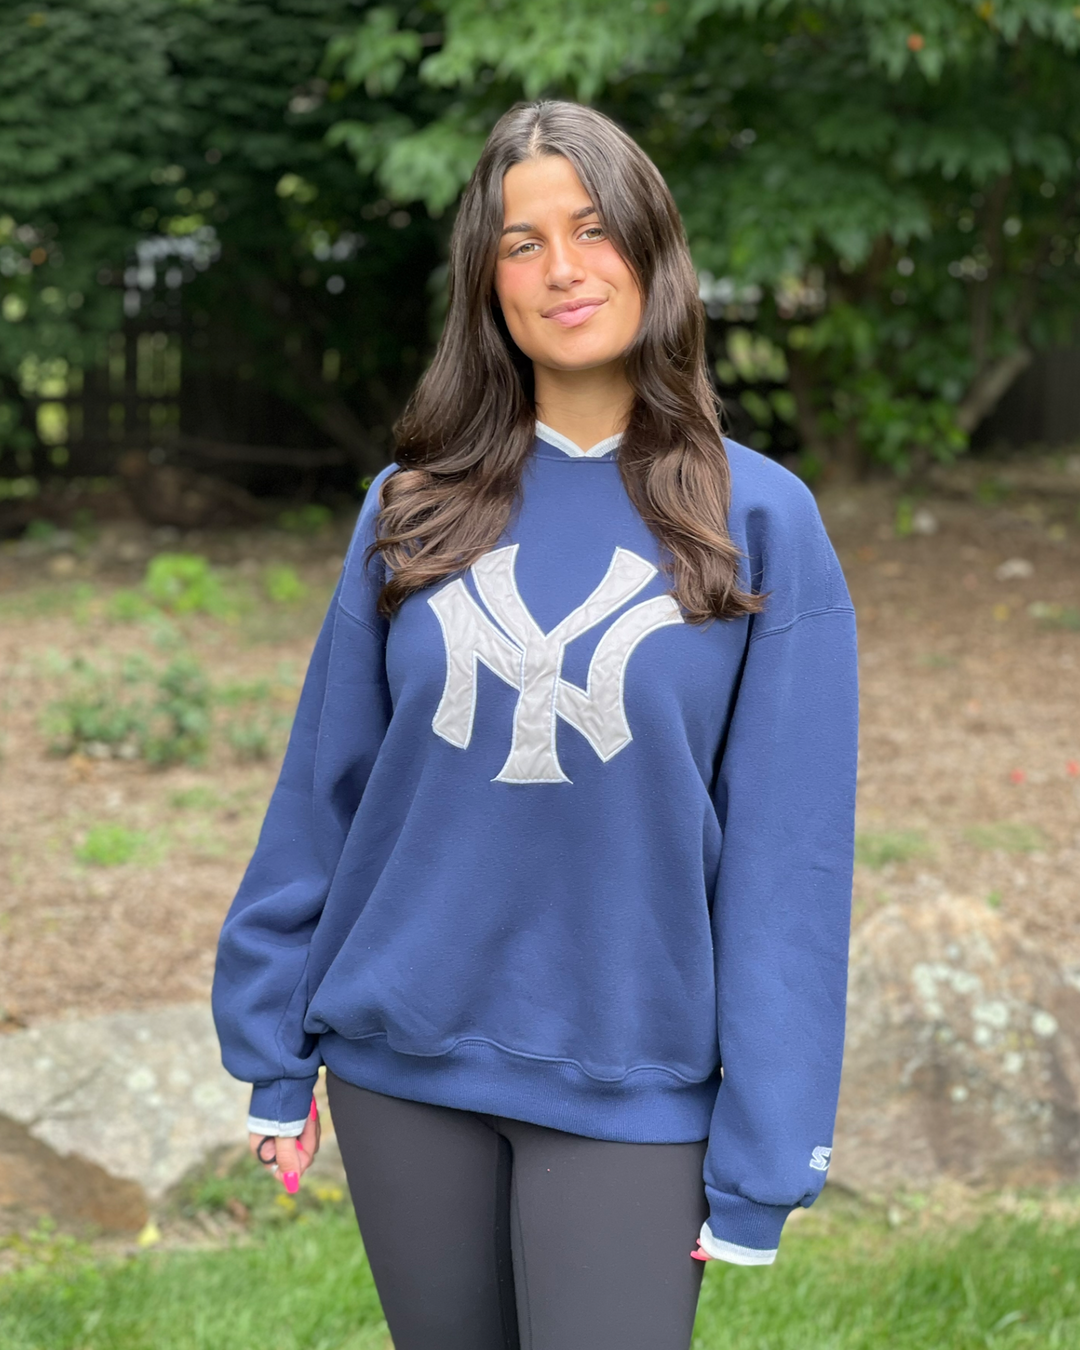 new york yankees vintage sweatshirt